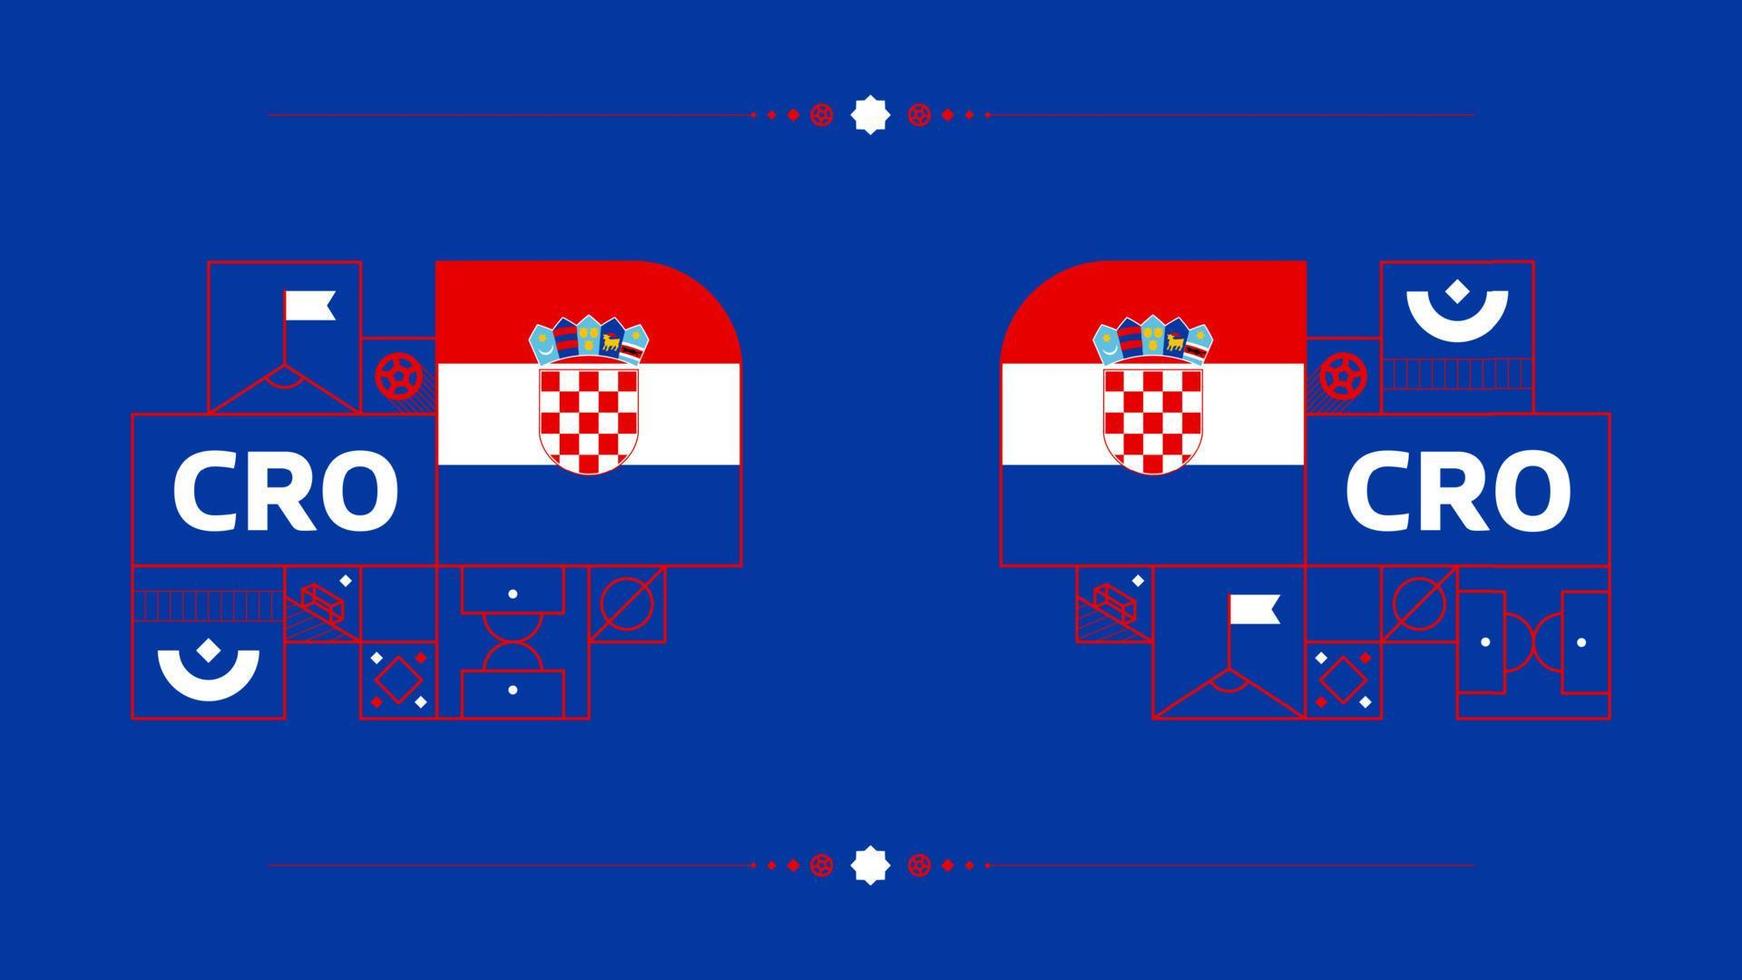 bandera de croacia para el torneo de copa de fútbol 2022. bandera del equipo nacional aislada con elementos geométricos para la ilustración de vector de fútbol o fútbol 2022